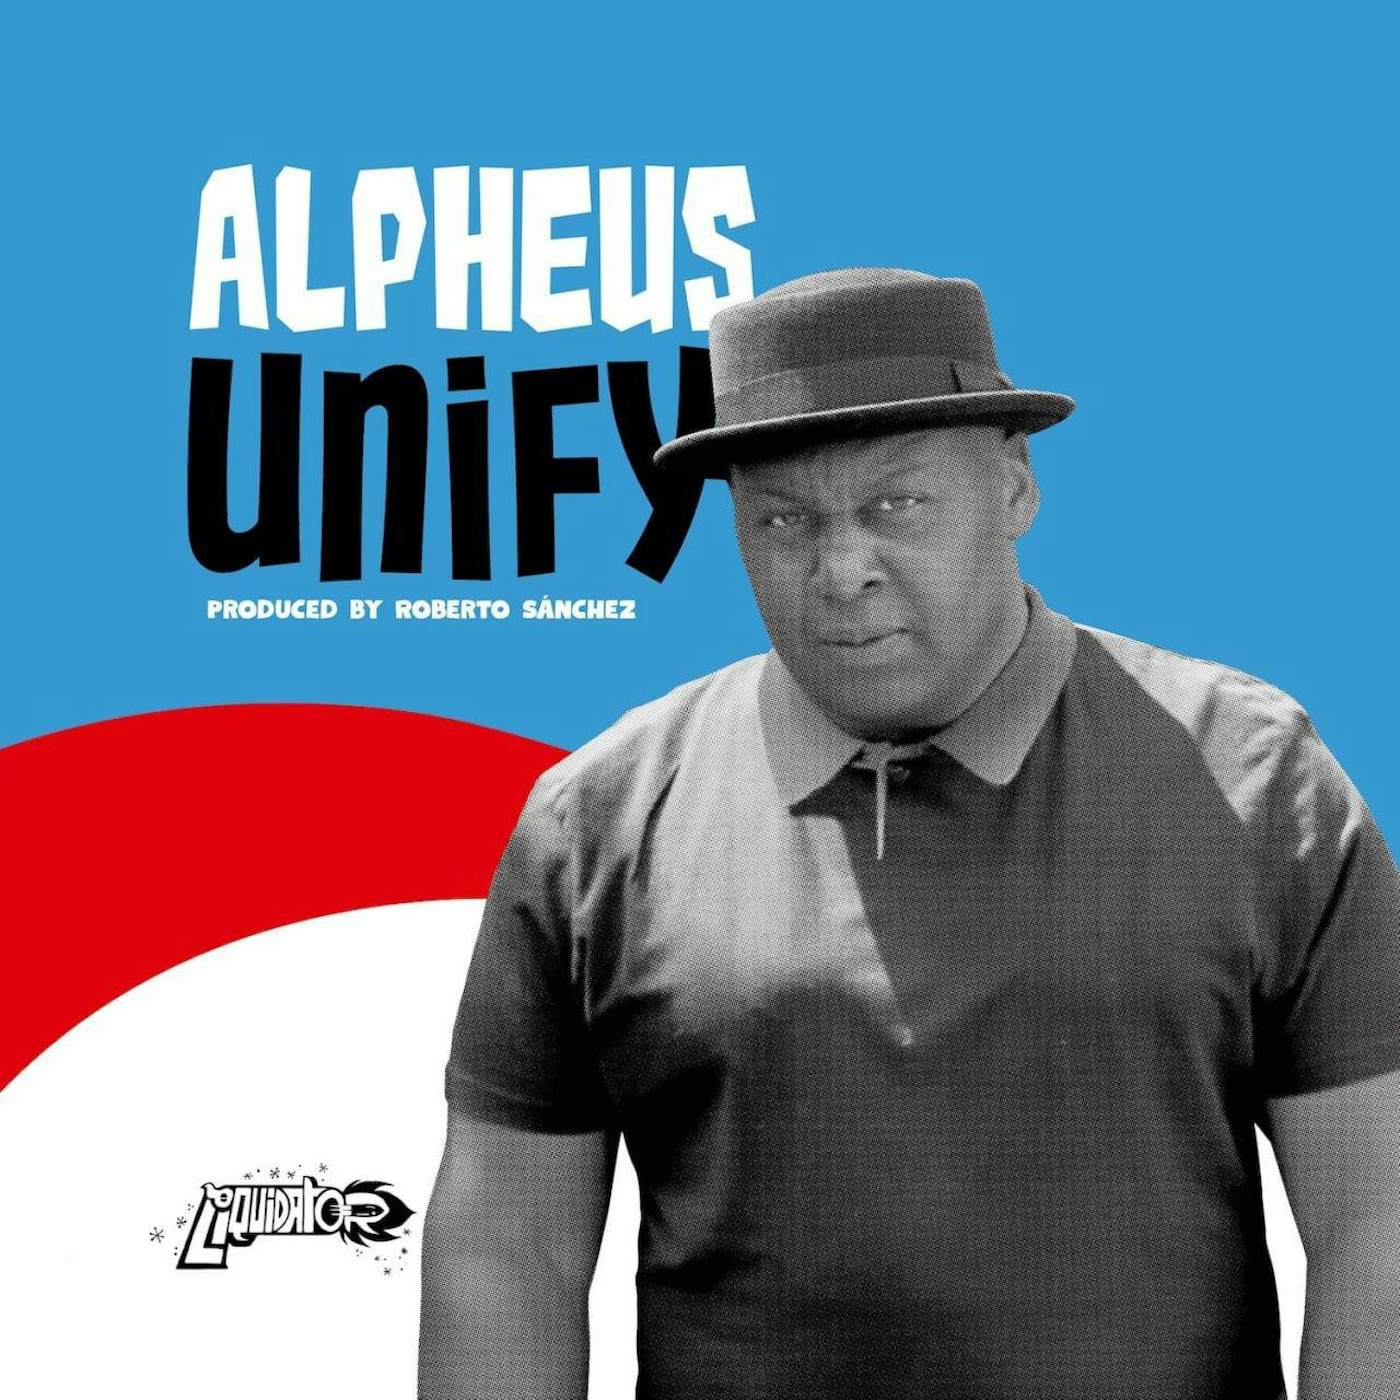 Alpheus Unify Vinyl Record